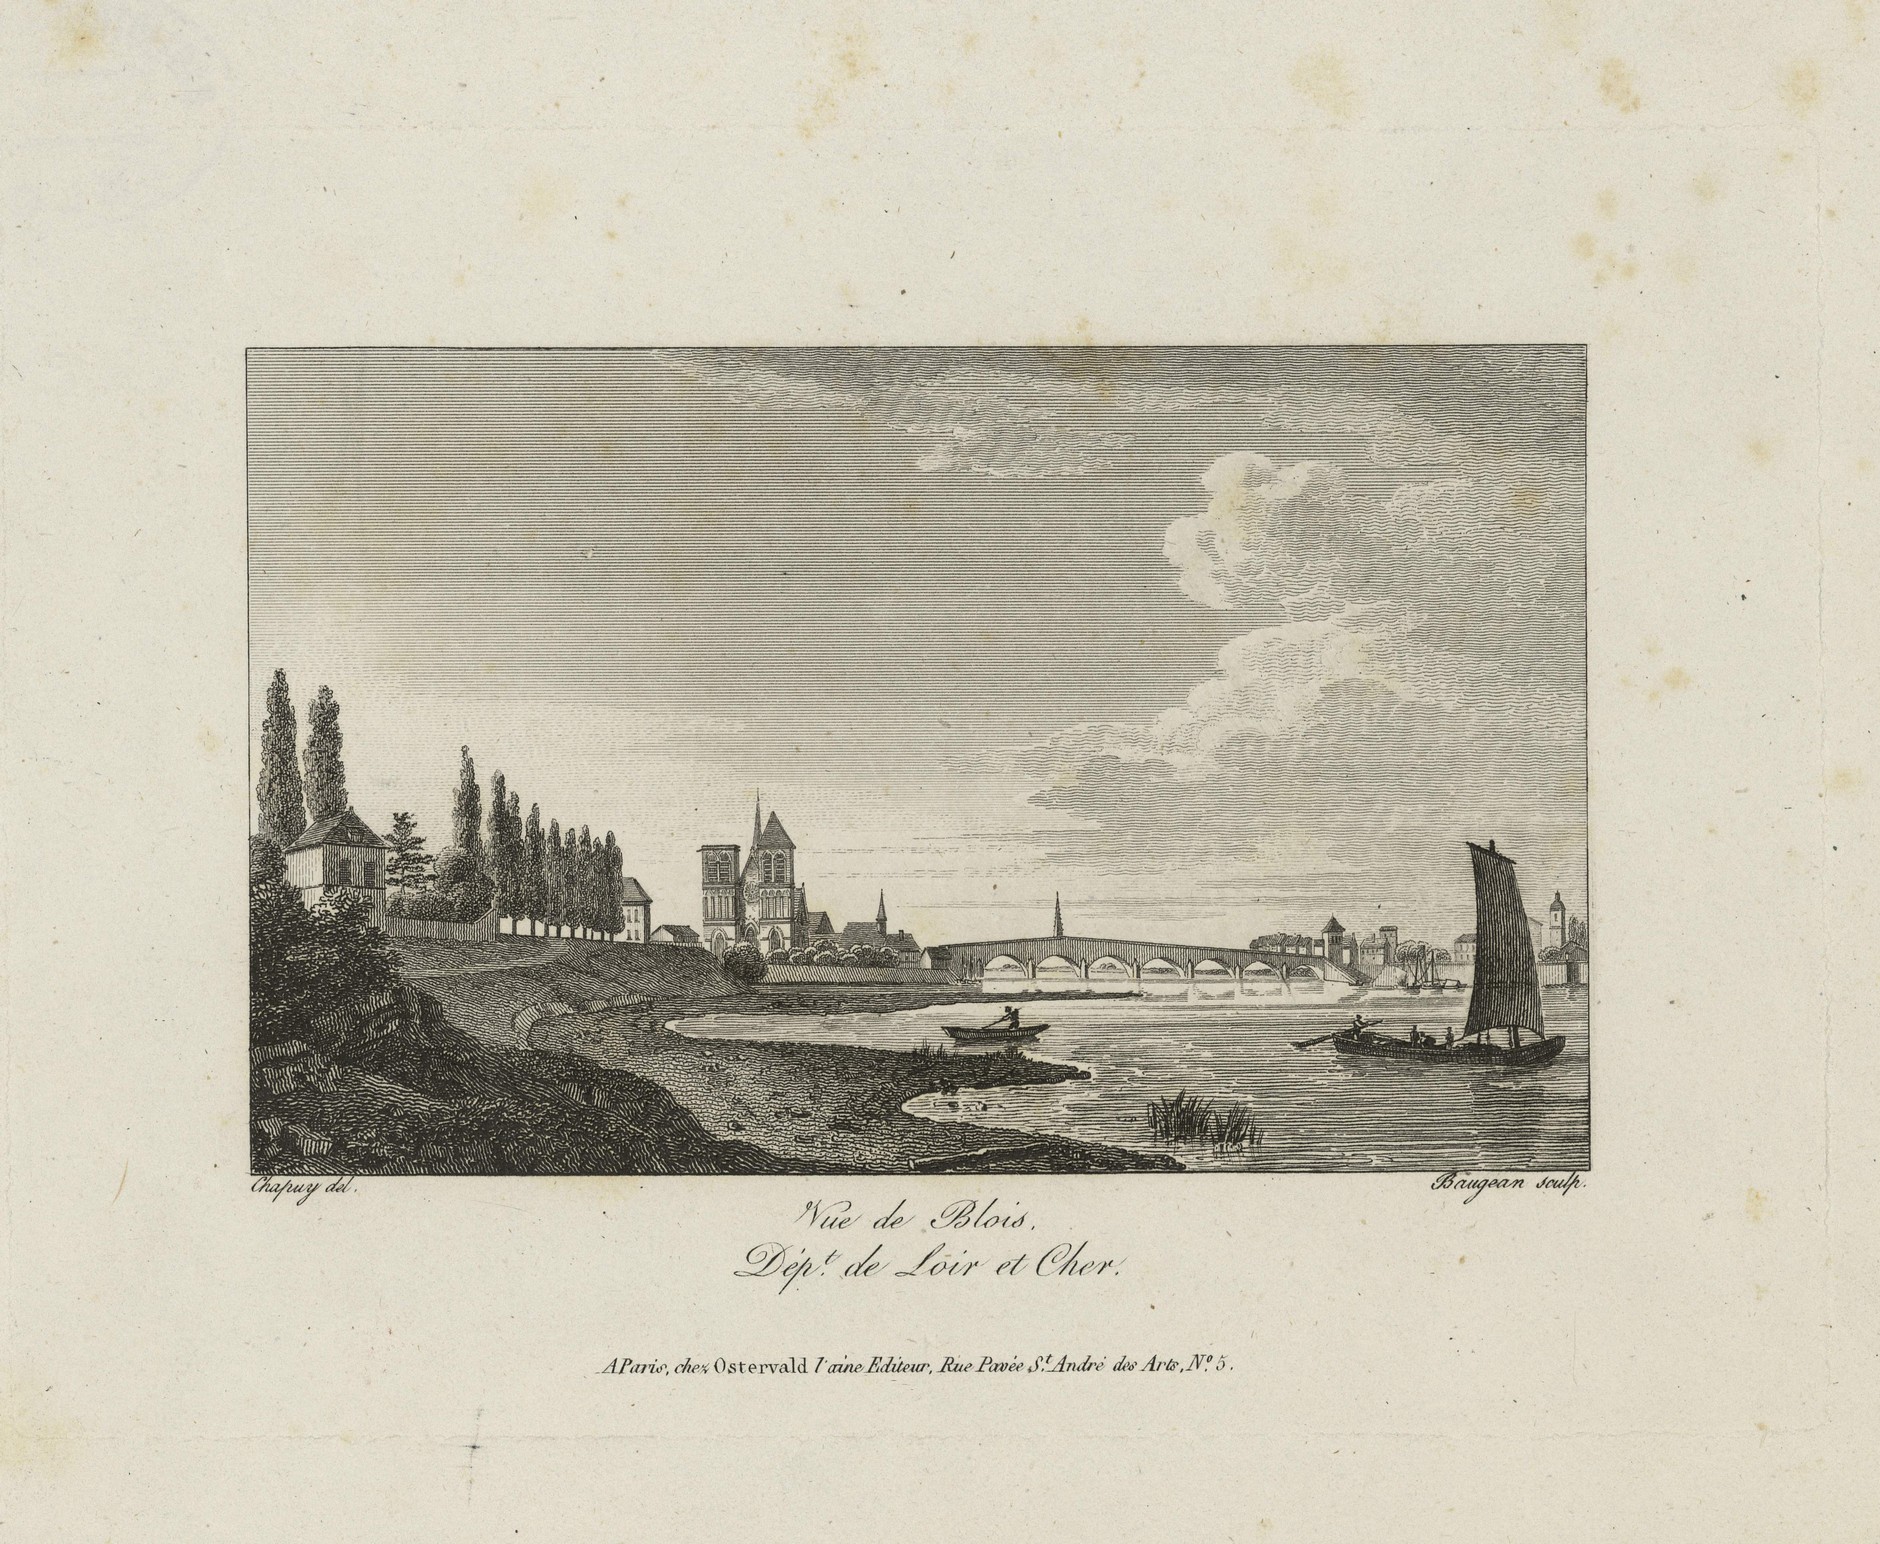 Vue de Blois, eau forte par Baugeau, d'après Chapuy, vers 1841